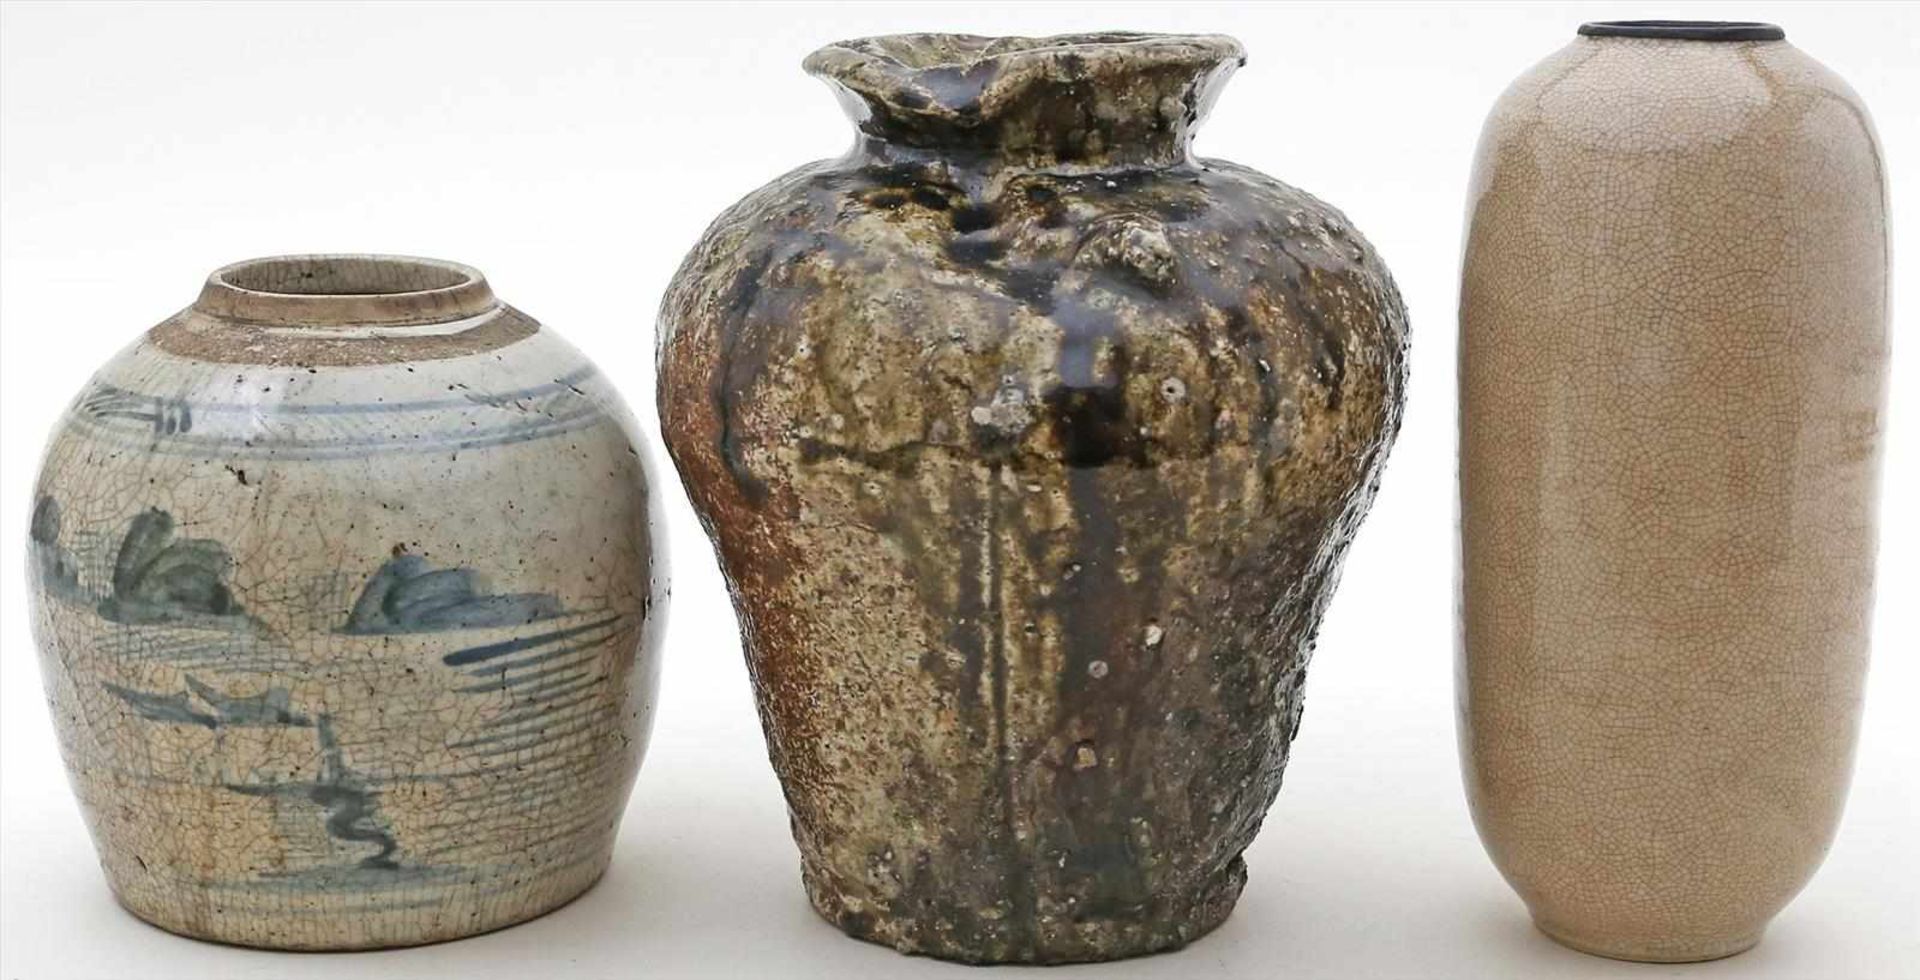 2 asiatische Vasen und Ingwertopf.Keramik. Blaudekor, Craquelé sowie strukturierte, glasierte